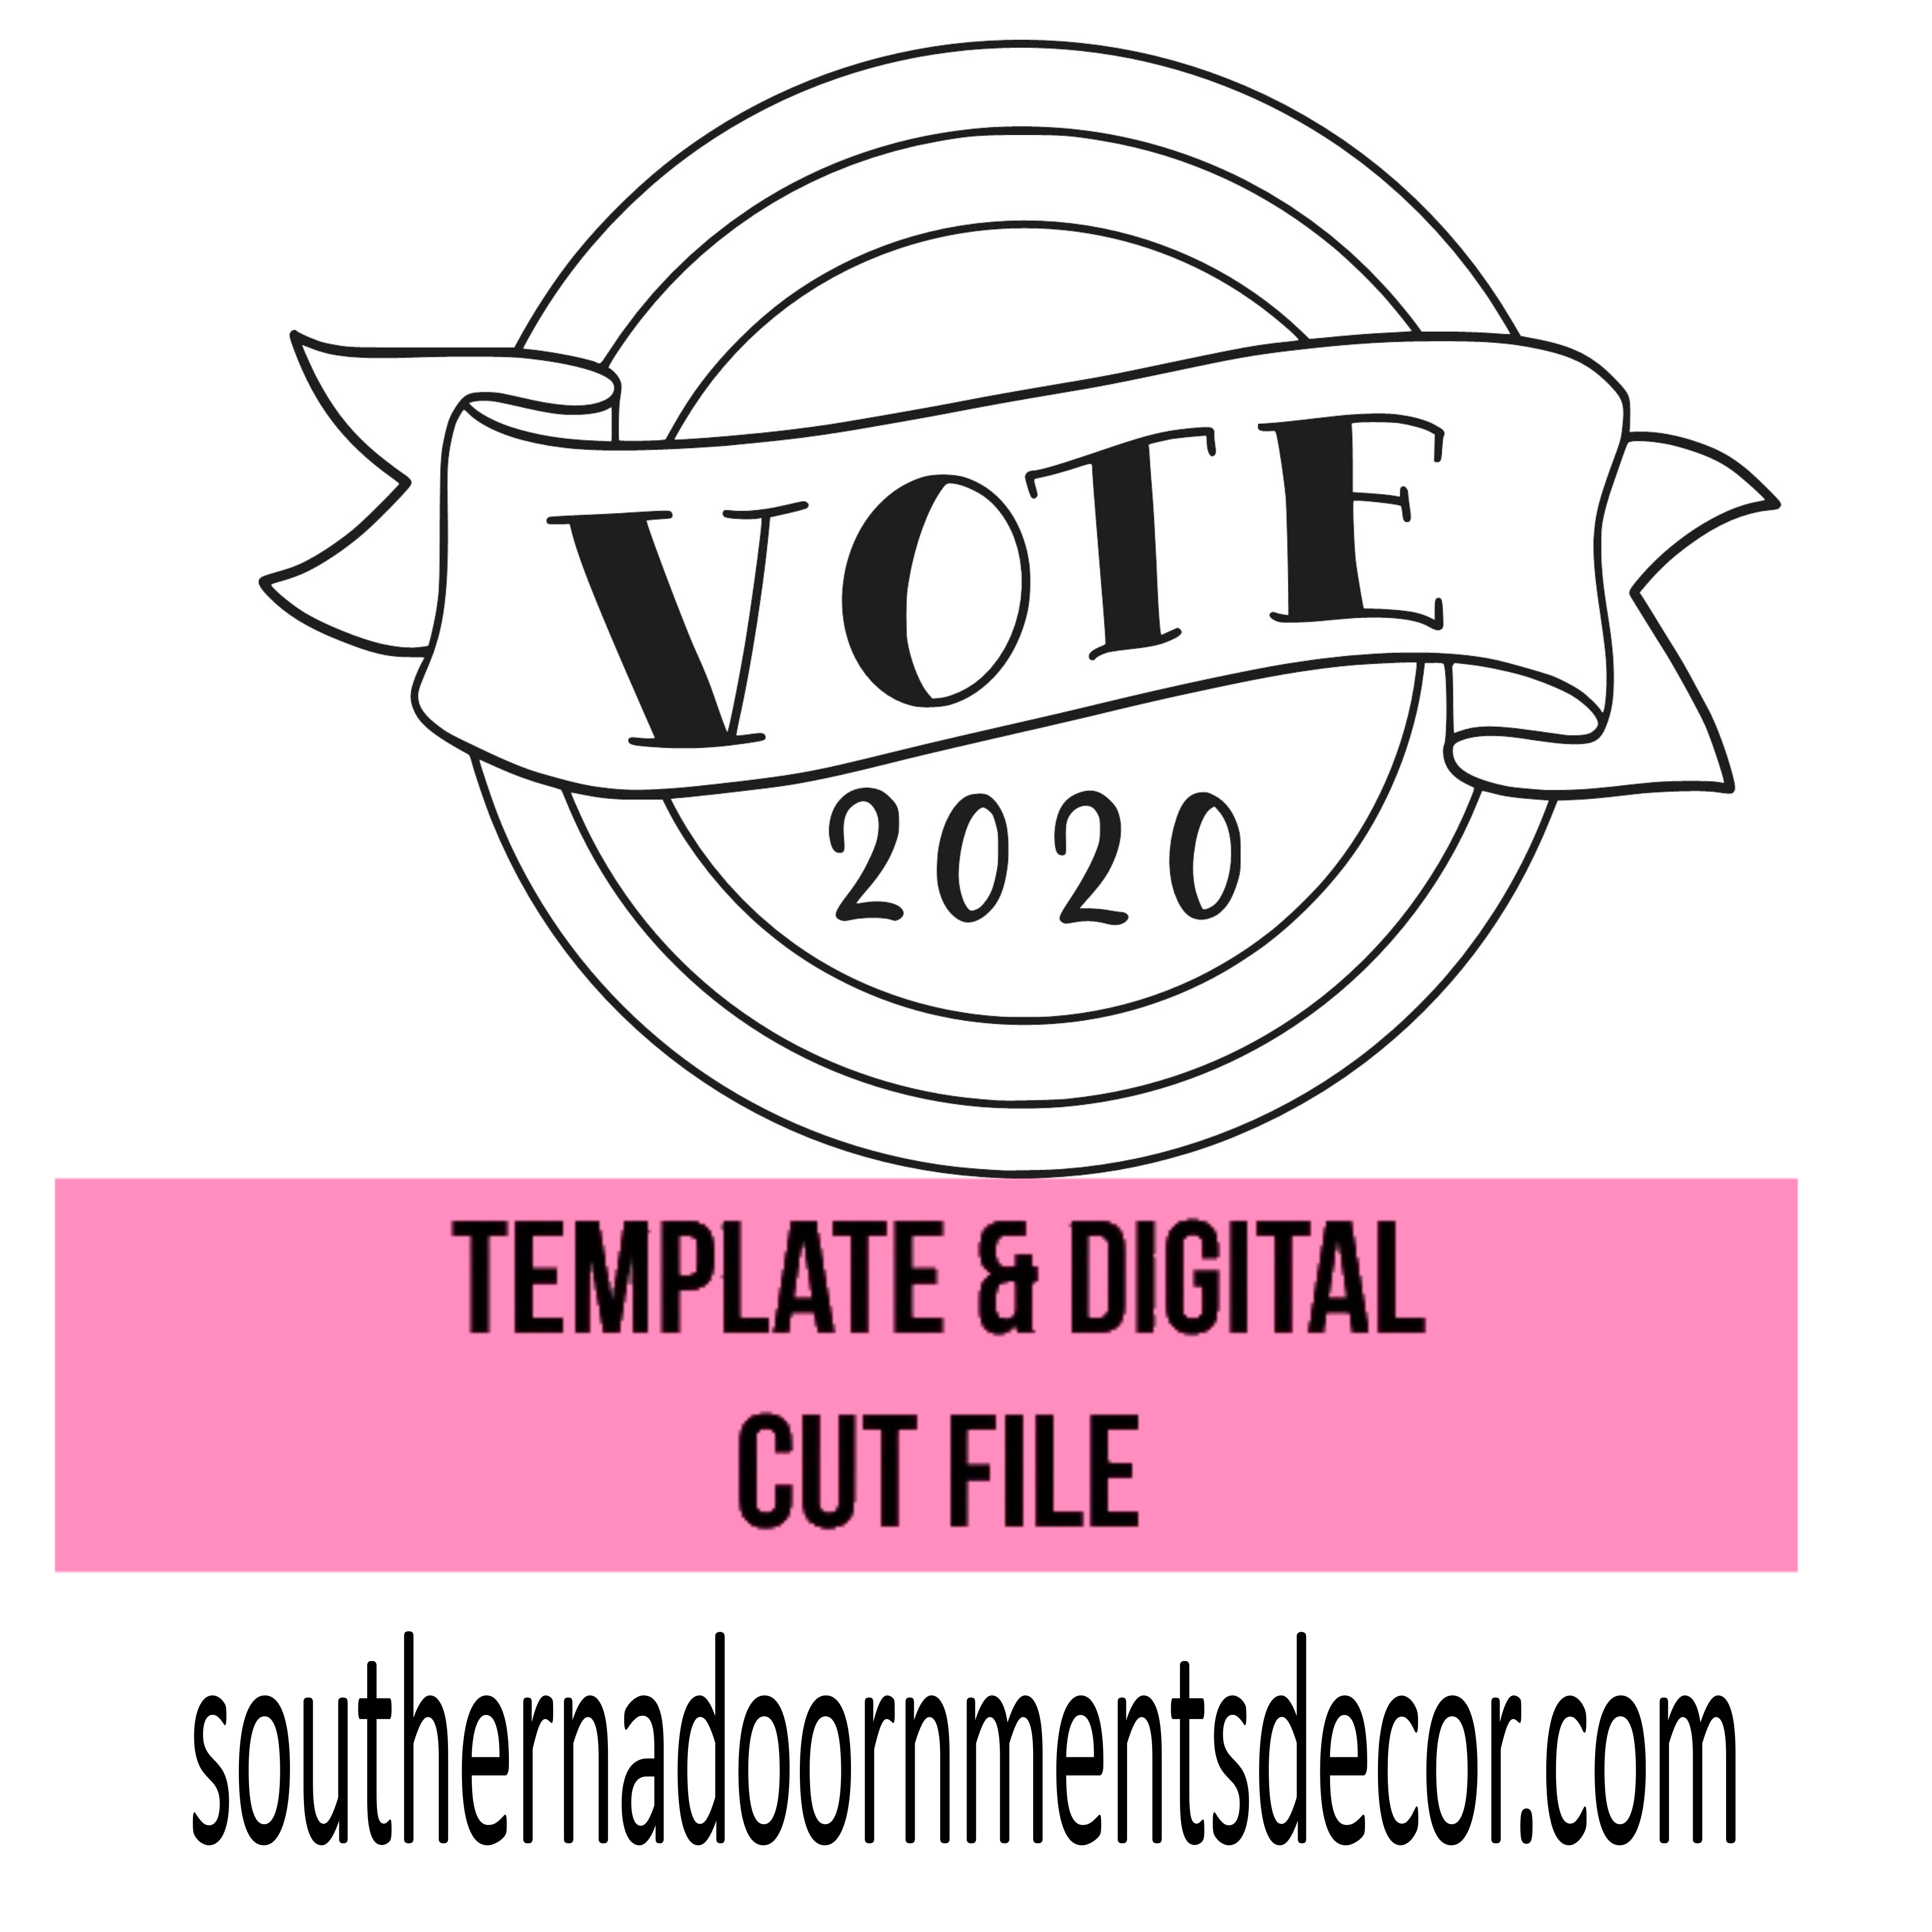 VOTE 2020 Template & Digital Cut File